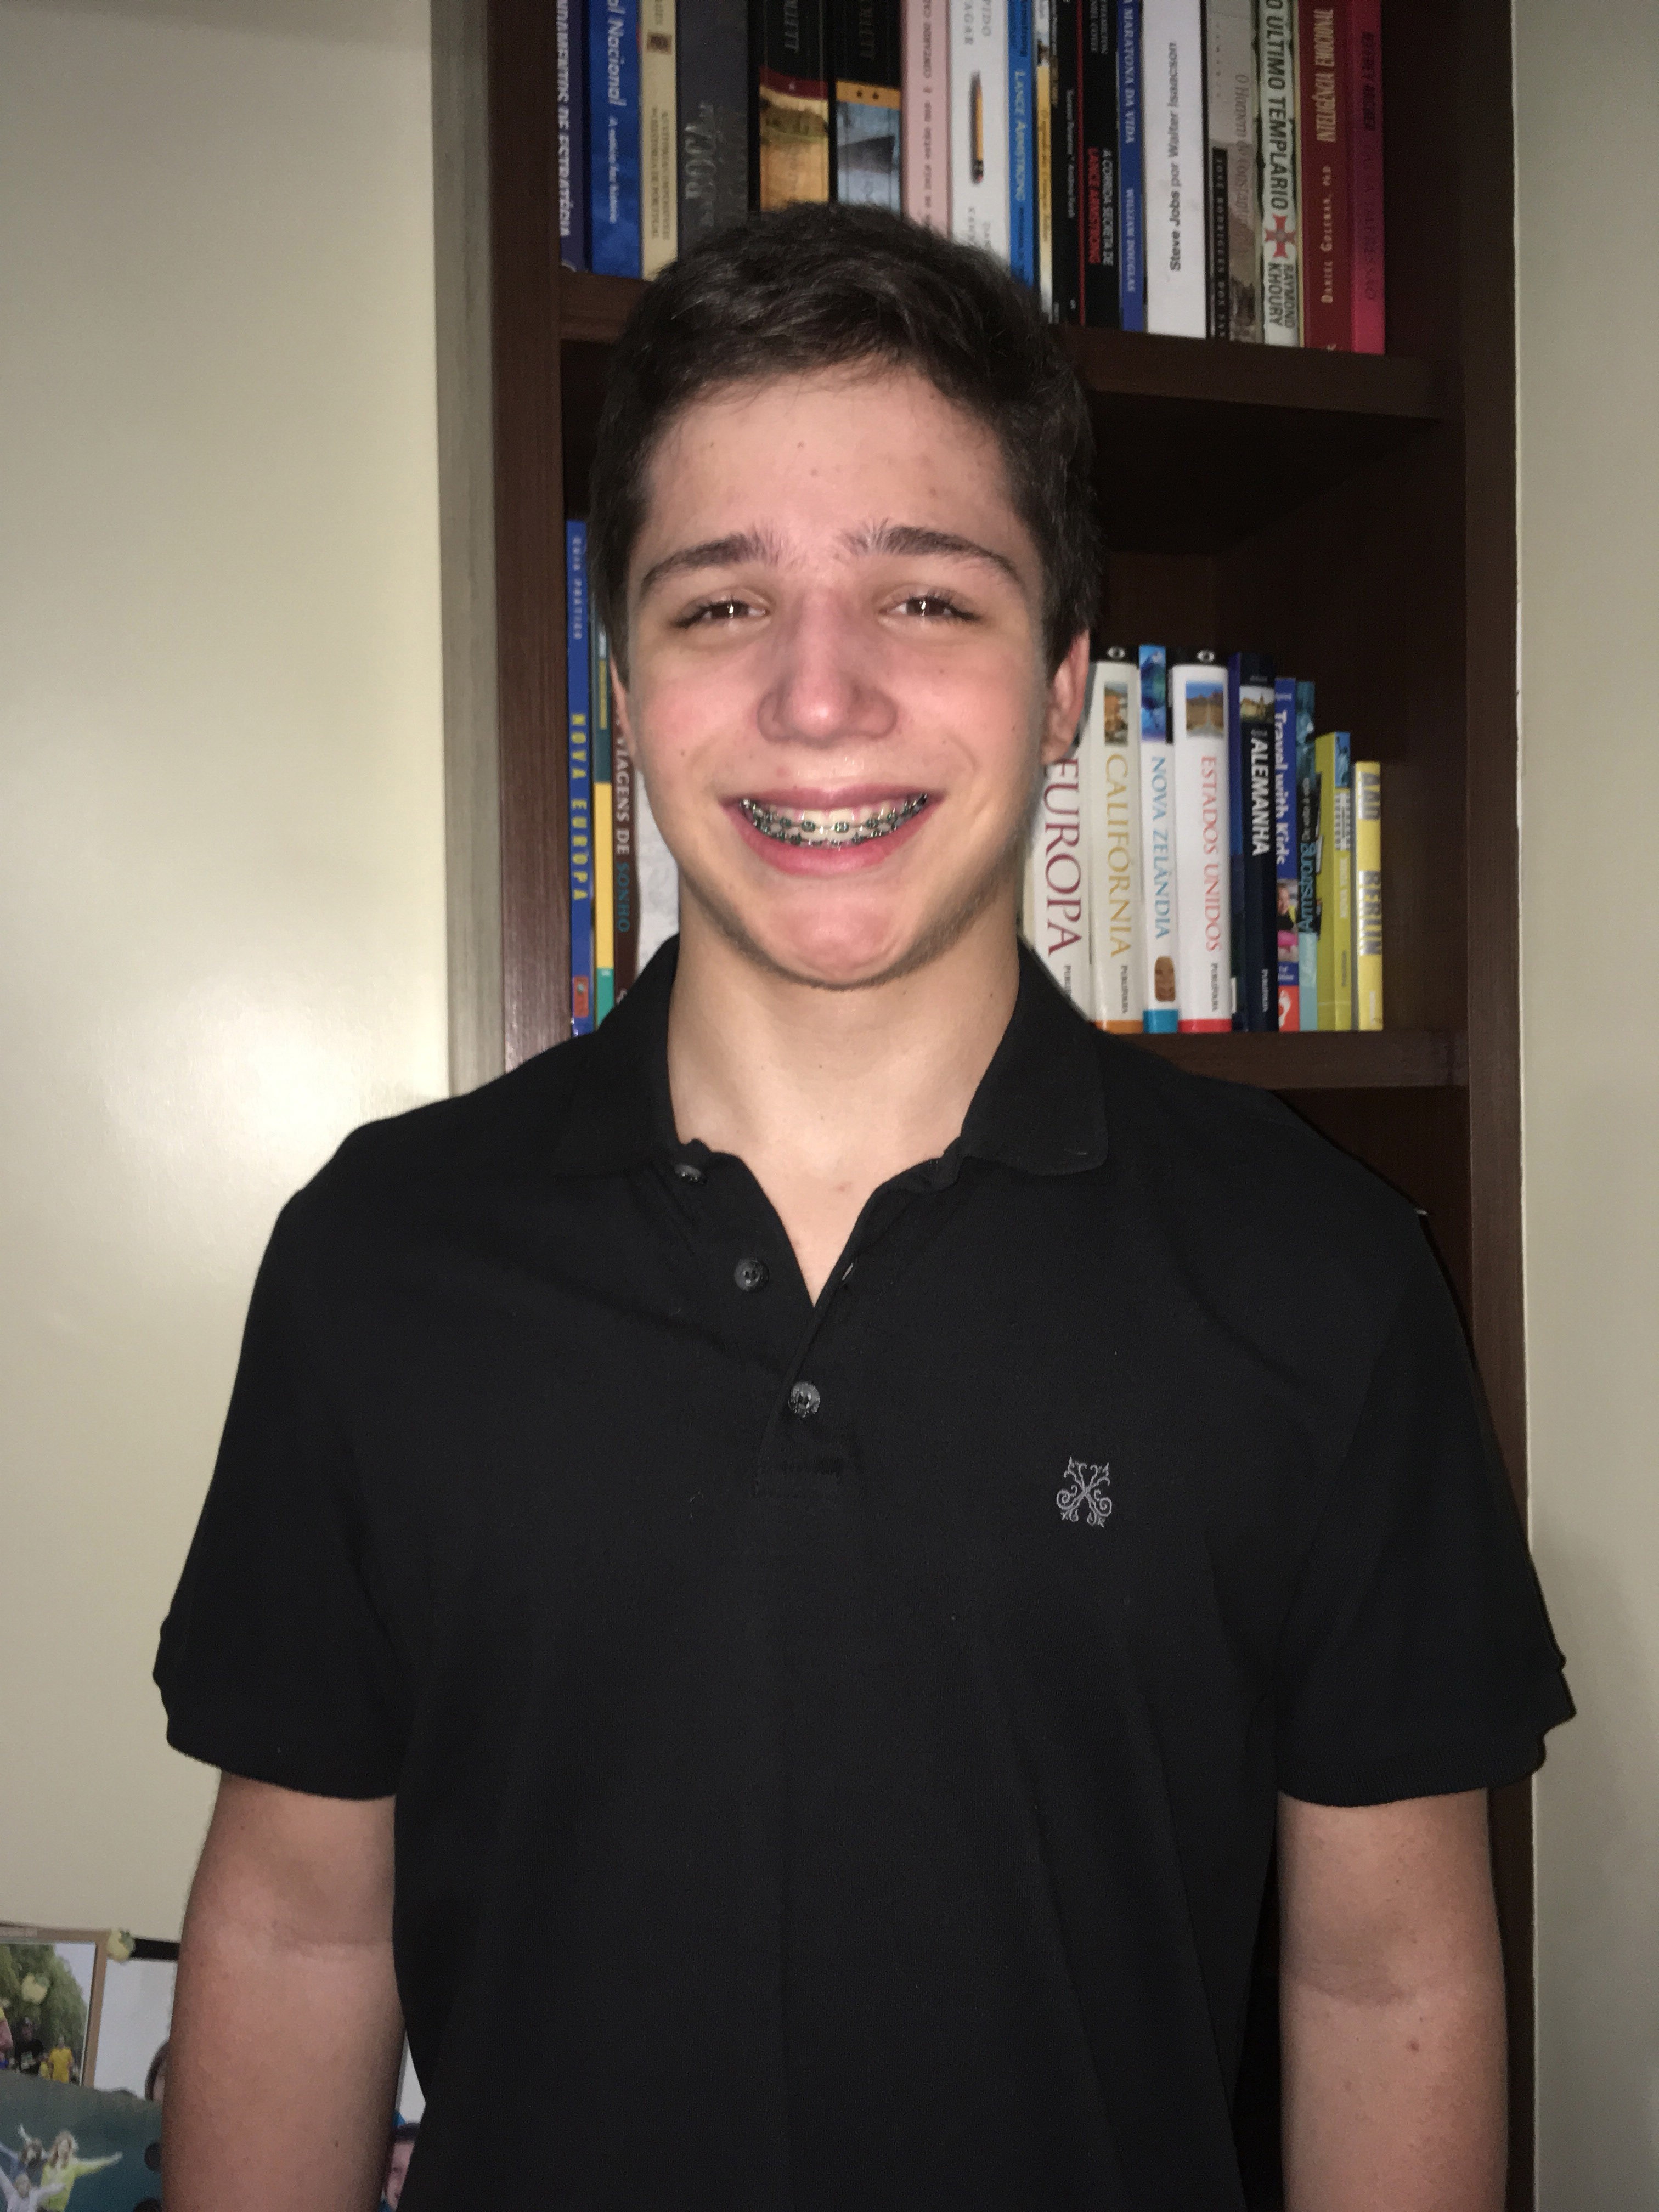 Bruno Gorresen Mello - tem 17 anos, é de Belém (PA) e cursa o 3º ano do ensino médio no Centro Educacional Ideal (Foto: divulgação)